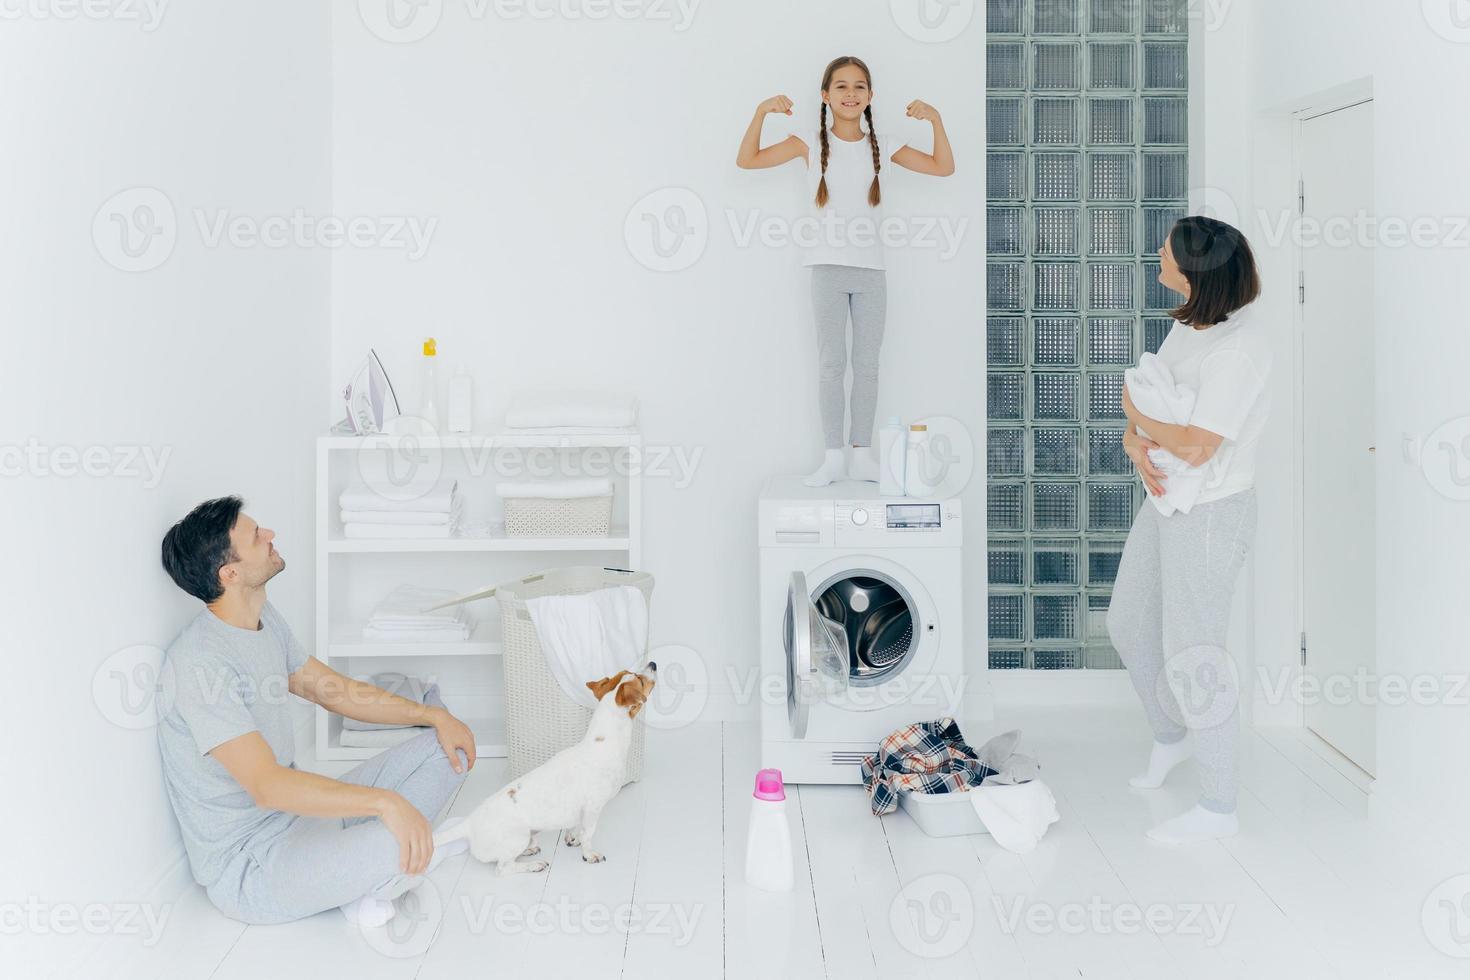 foto av glad skolflicka poserar ovanpå tvättmaskinen, visar muskler, höjer armarna, redo att hjälpa föräldrar med tvätt eller tvätt. kvinna och man poserar i tvättrum med hund och liten unge